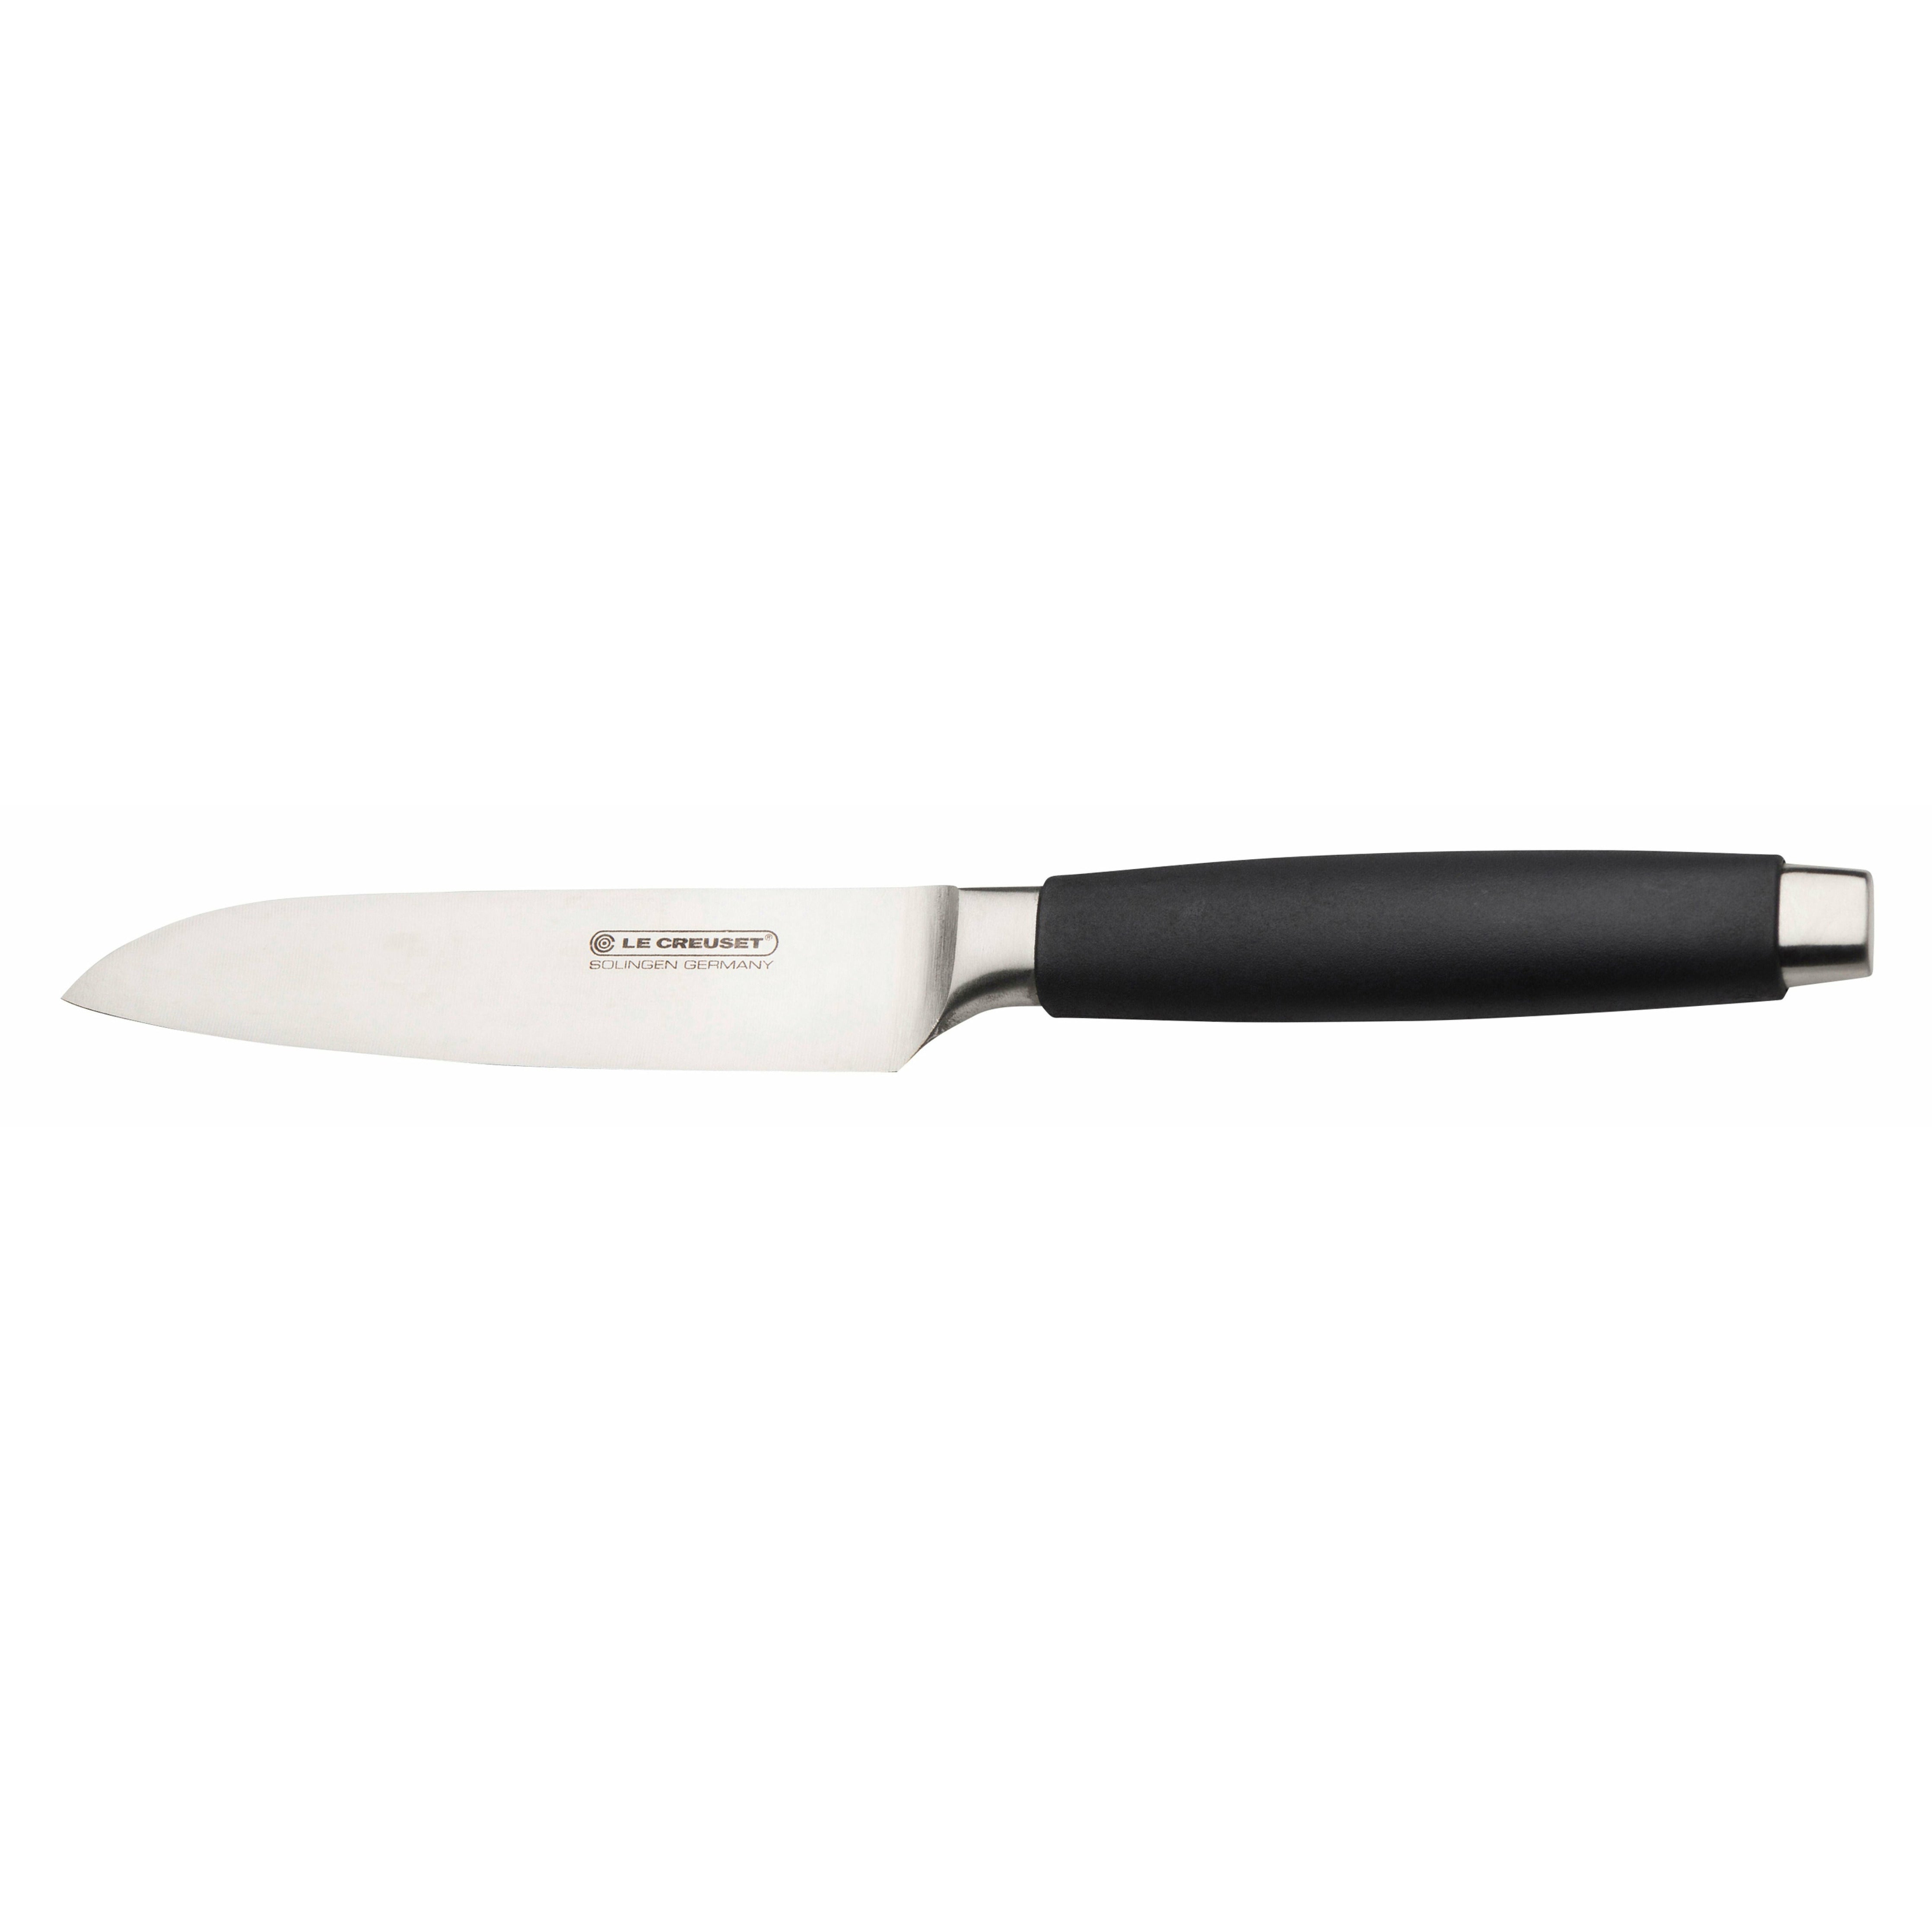 Le Creuset Santoku Knife Standard med svart håndtak, 13 cm